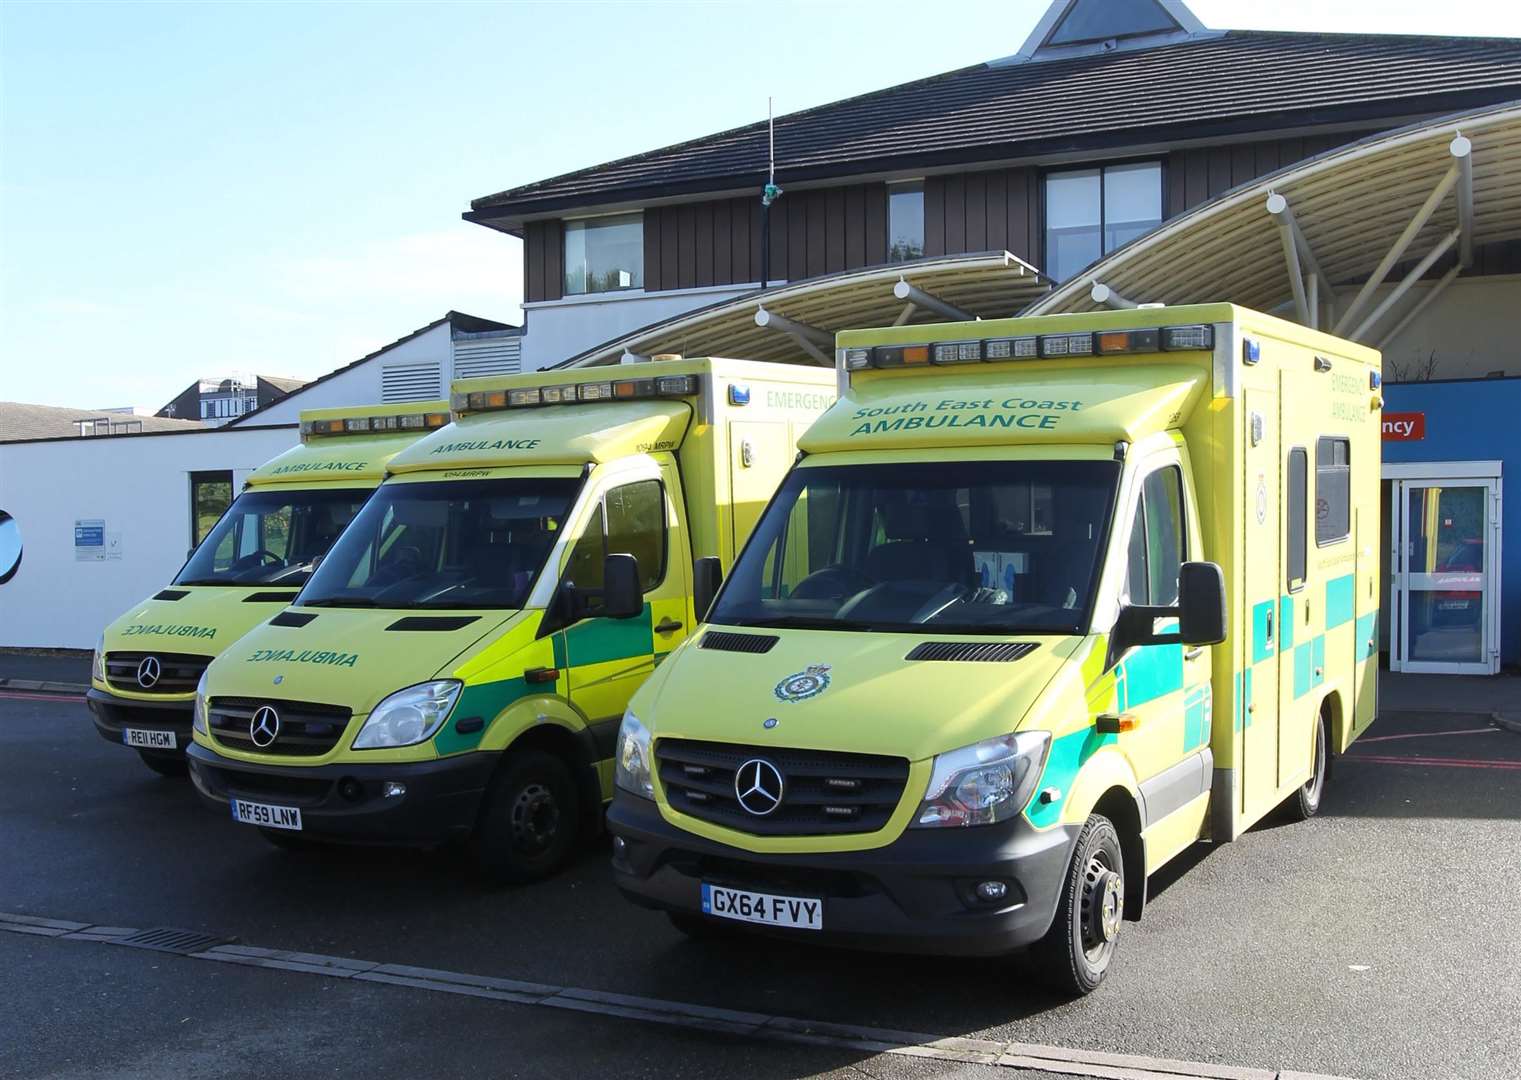 Ambulances at Maidstone Hospital